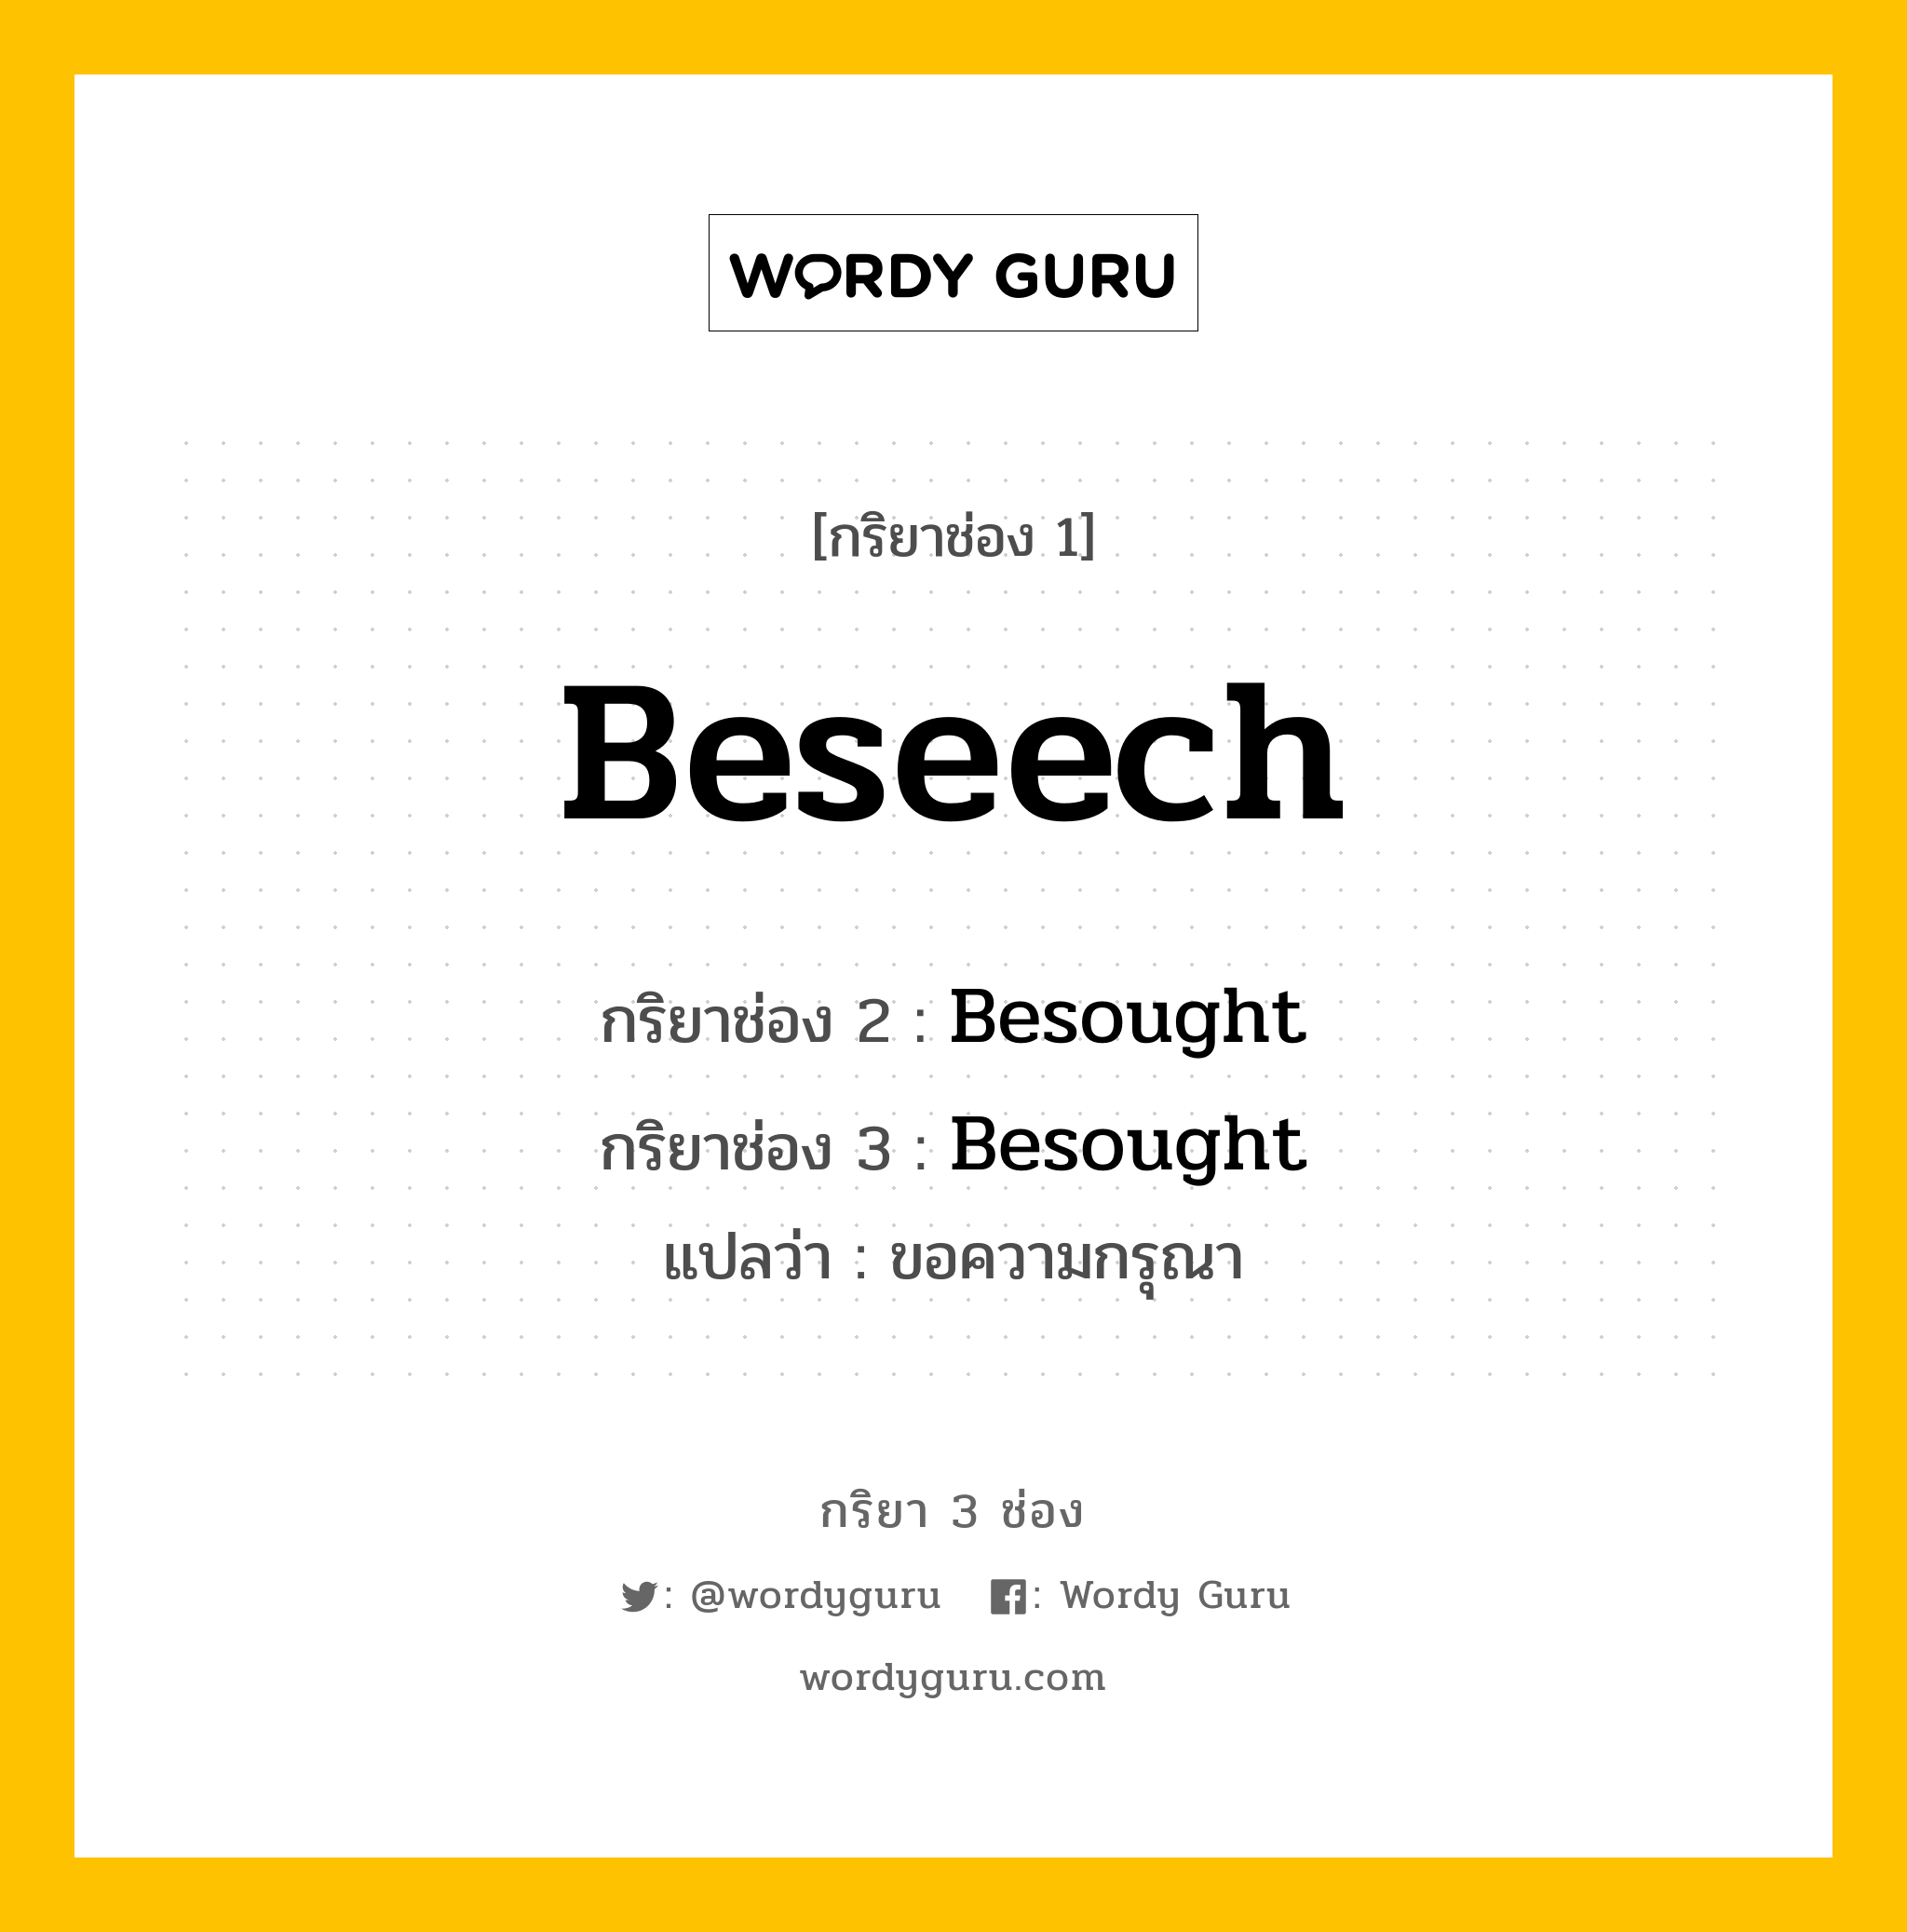 กริยา 3 ช่อง: Beseech ช่อง 2 Beseech ช่อง 3 คืออะไร, กริยาช่อง 1 Beseech กริยาช่อง 2 Besought กริยาช่อง 3 Besought แปลว่า ขอความกรุณา หมวด Irregular Verb